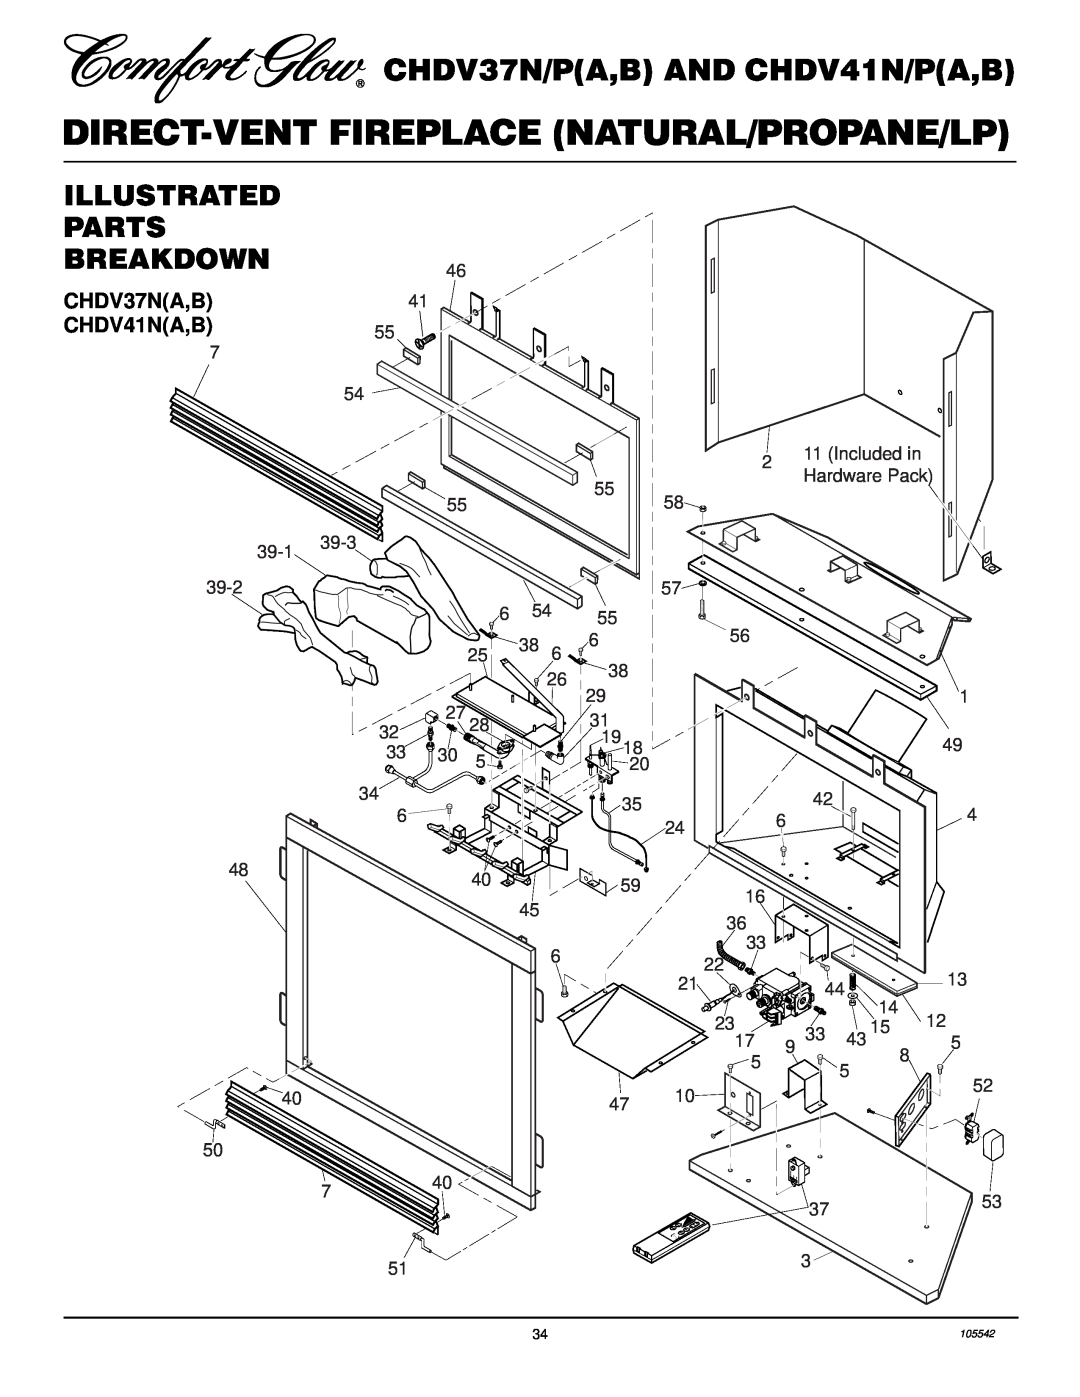 Desa CHDV37N/P Illustrated Parts Breakdown, CHDV37NA,B CHDV41NA,B, 39-1 39-2, 39-3, Included in Hardware Pack, 105542 